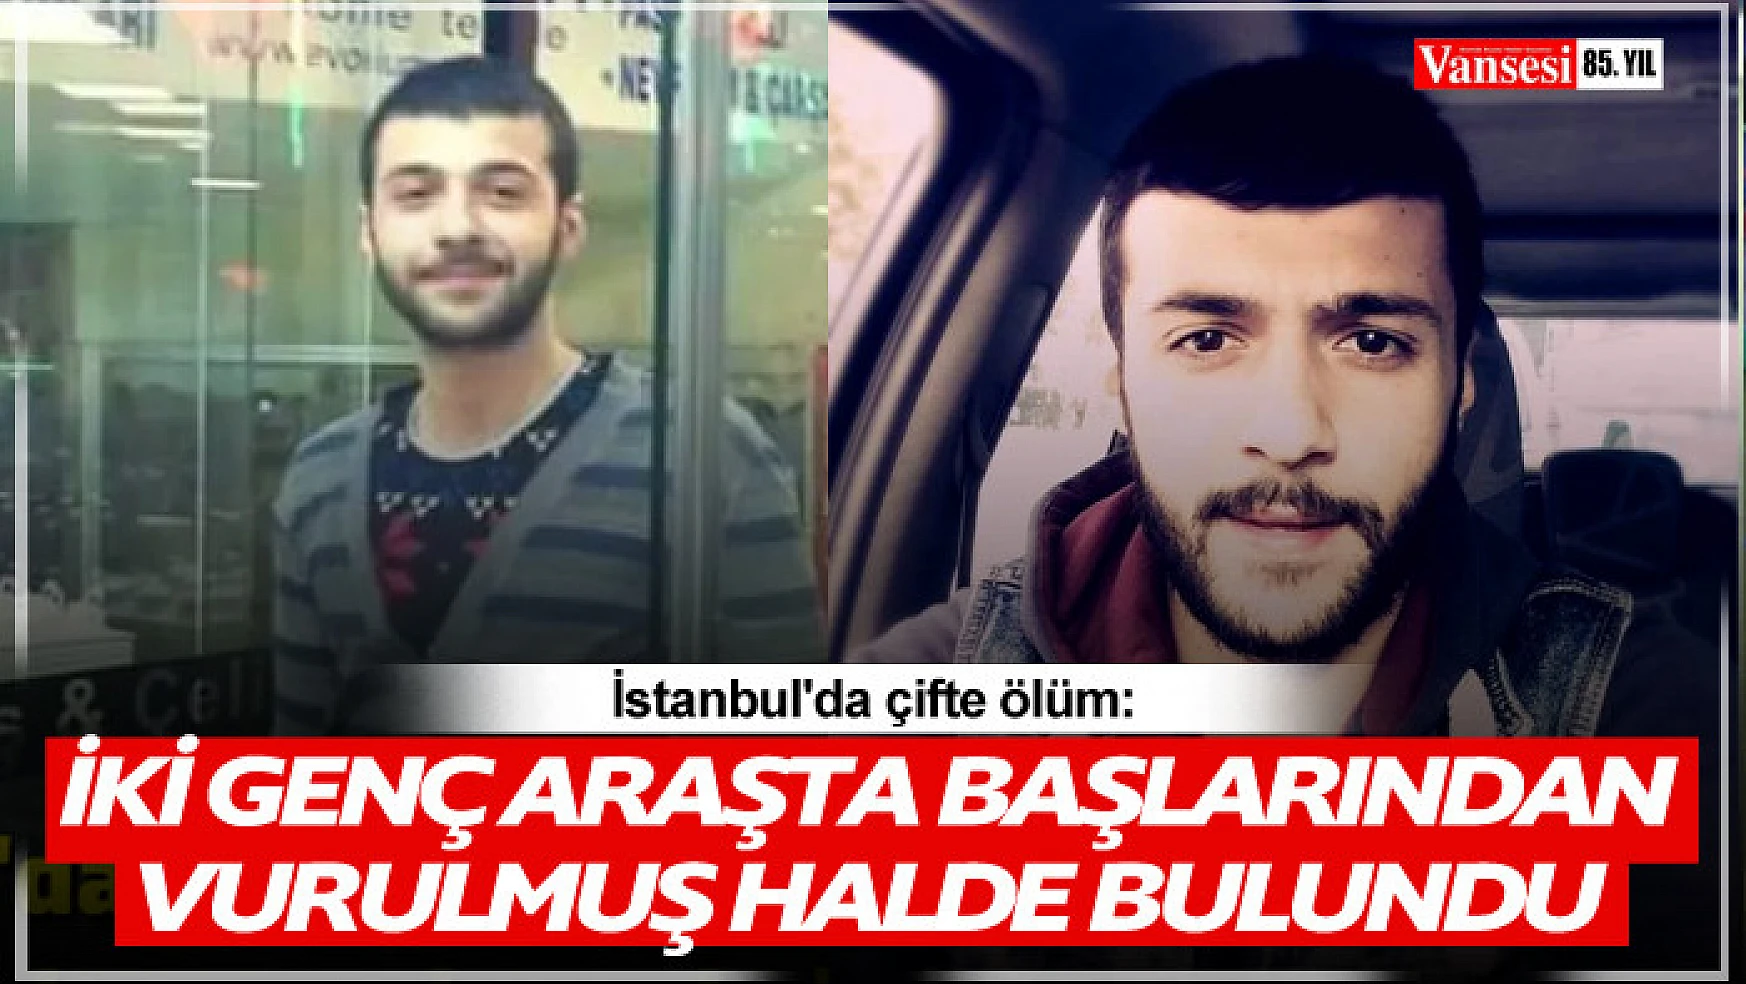 İstanbul'da çifte ölüm: İki genç araçta başlarından vurulmuş halde bulundu